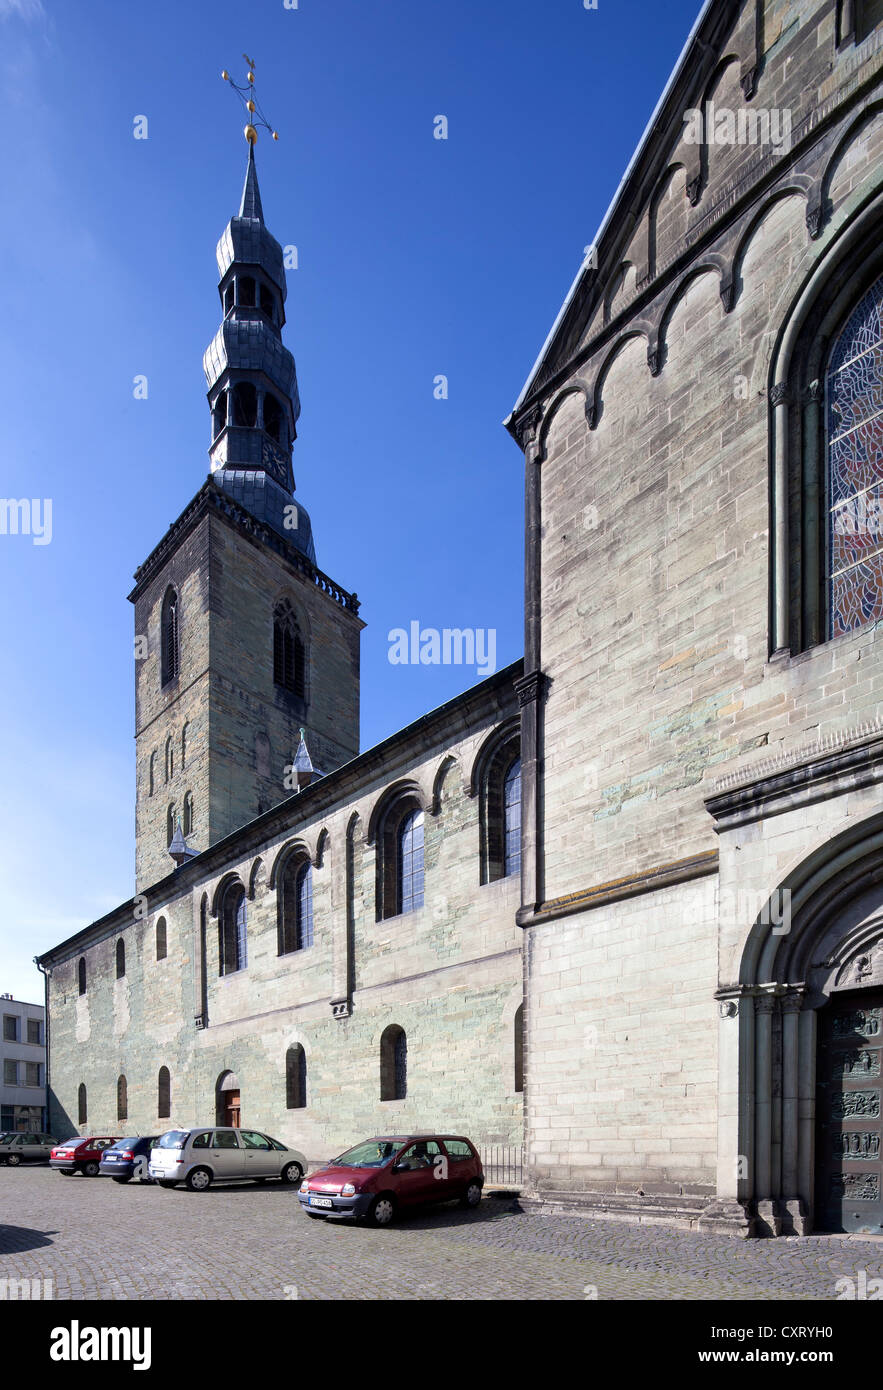 St.-Petri-Kirche-Kirche, auch bekannt als Alde Kerke Kirche, Soest, Nordrhein-Westfalen, Deutschland, Europa, PublicGround Stockfoto